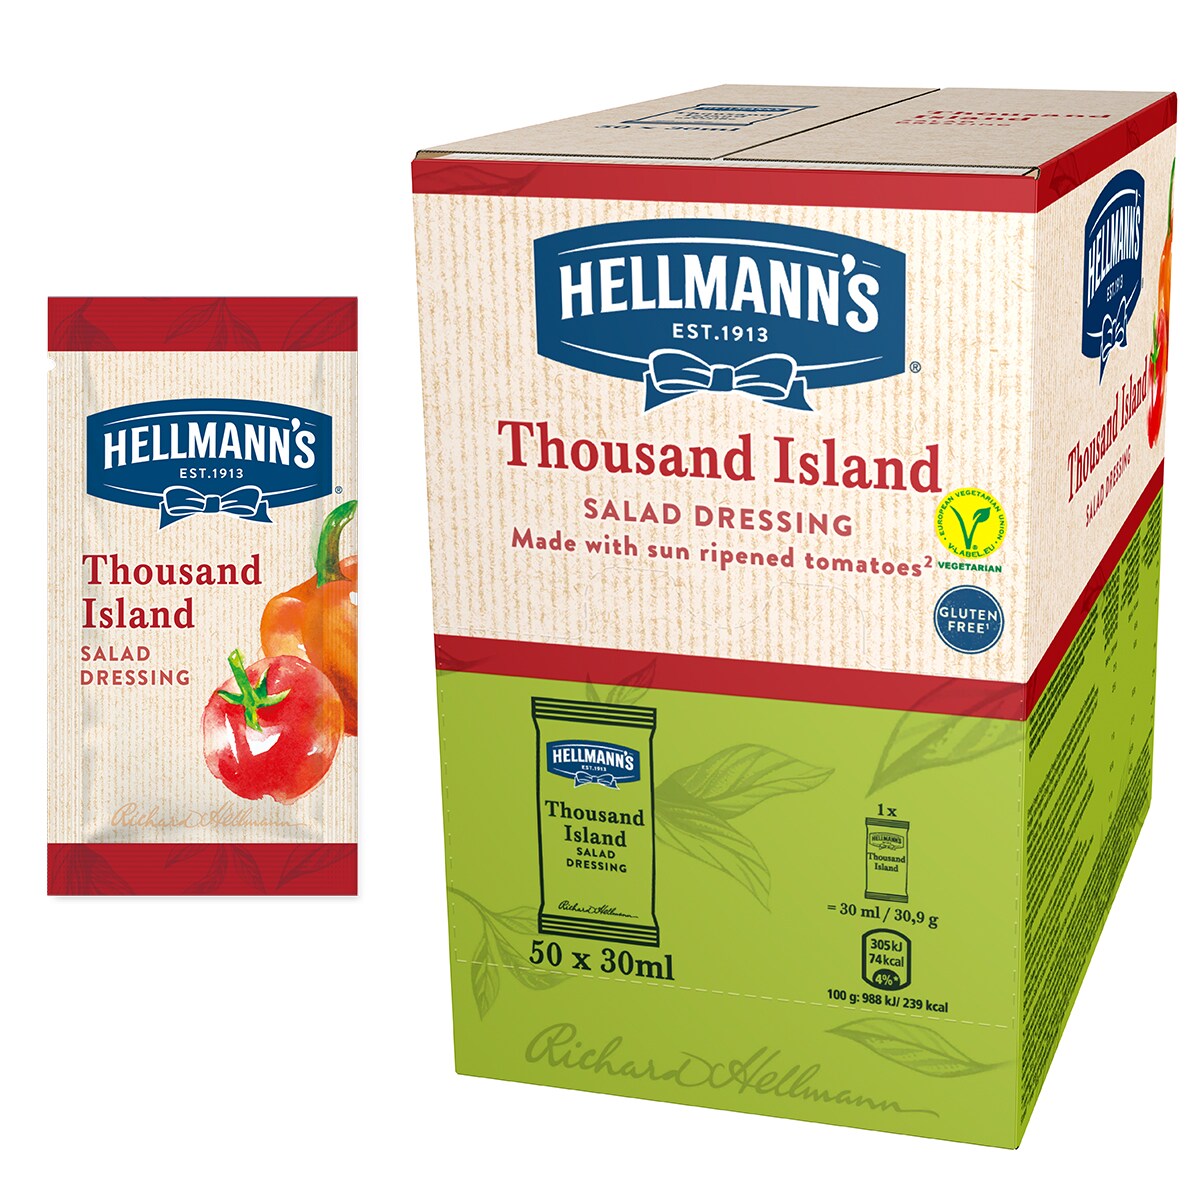 Hellmann's 1000 Island salatni preljev s rajčicama sazrelim na suncu